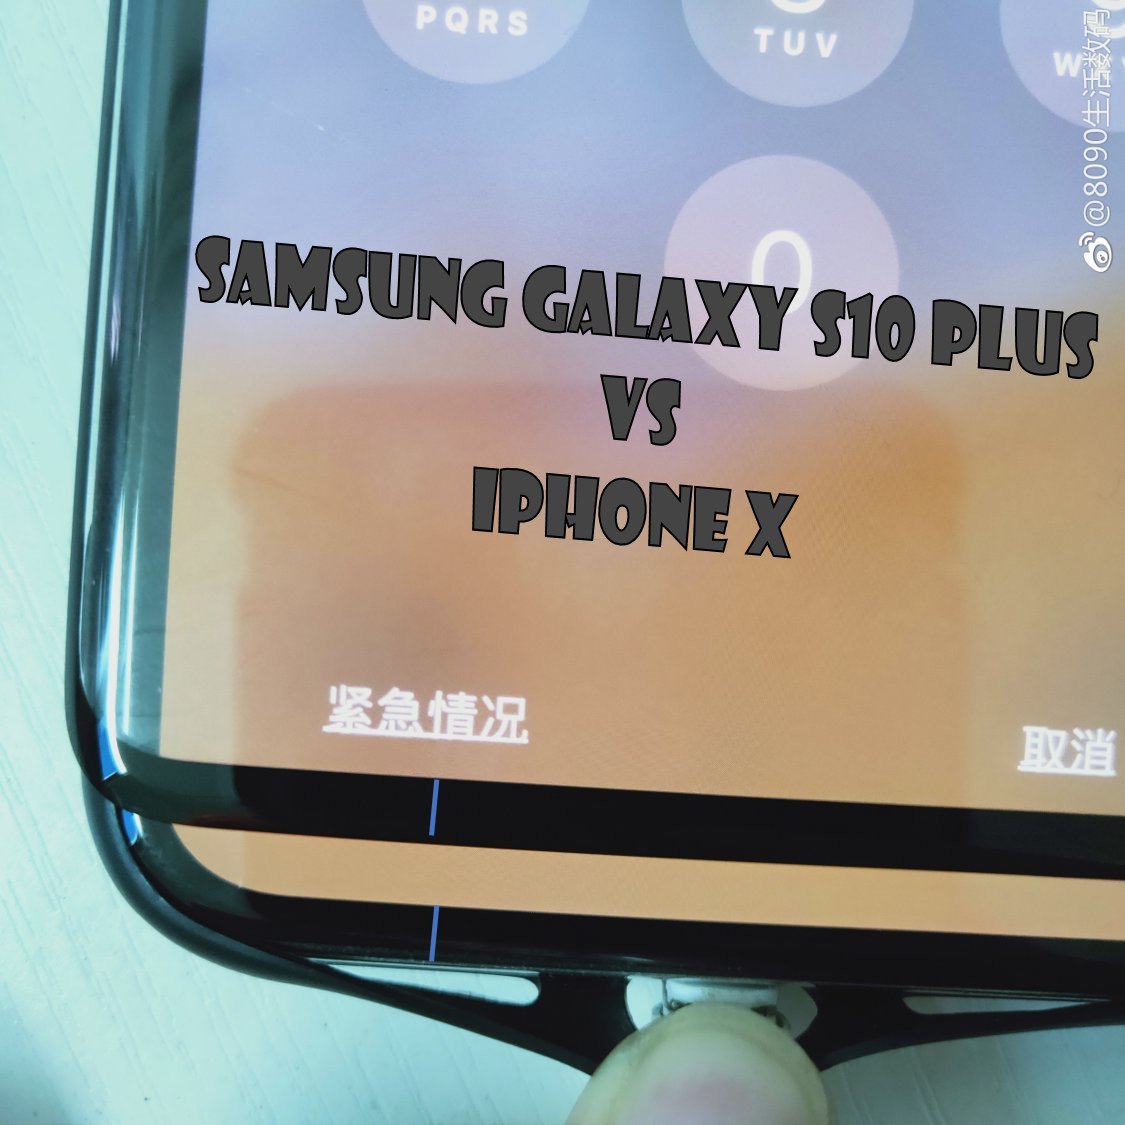 La fuga de la cubierta de la pantalla confirma que el Samsung Galaxy S10 Plus tiene un mentón pequeño y lindo